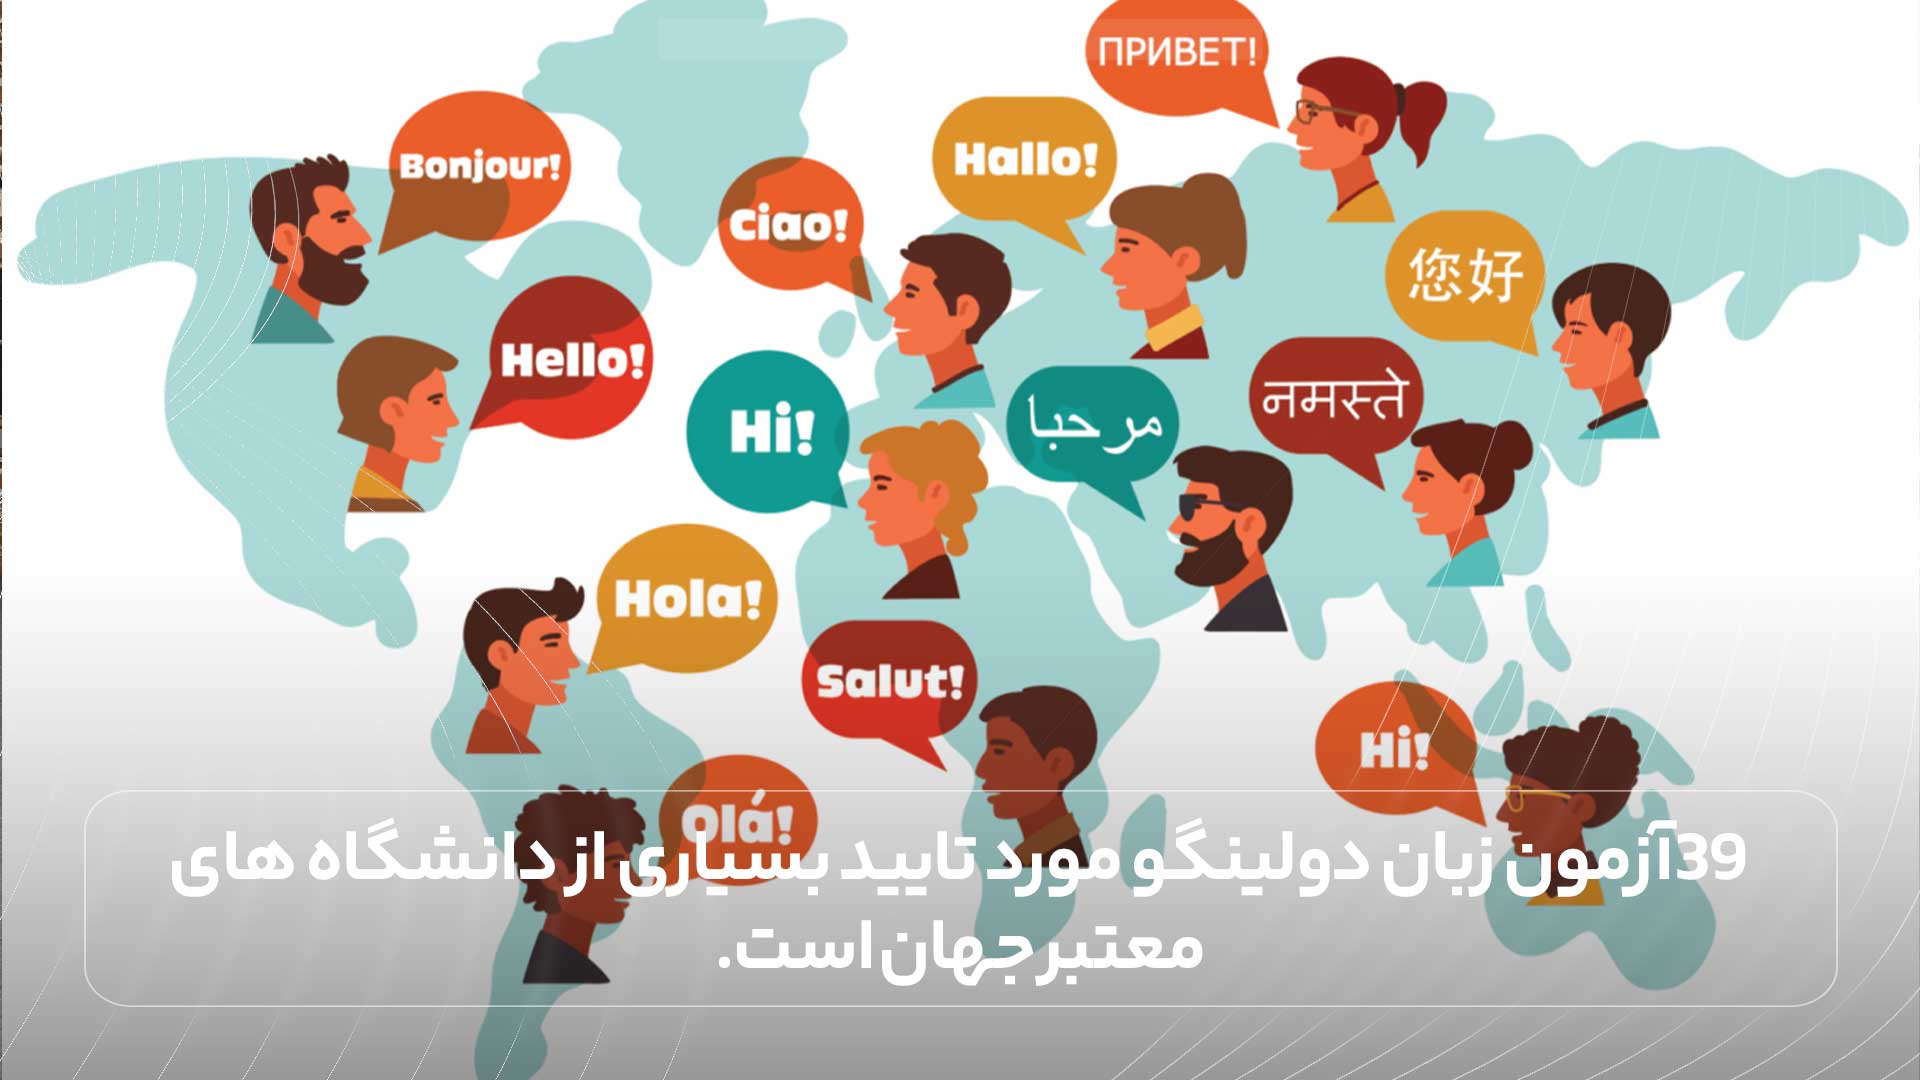 39 زبان مختلف در دولینگو آموزش داده می شود.